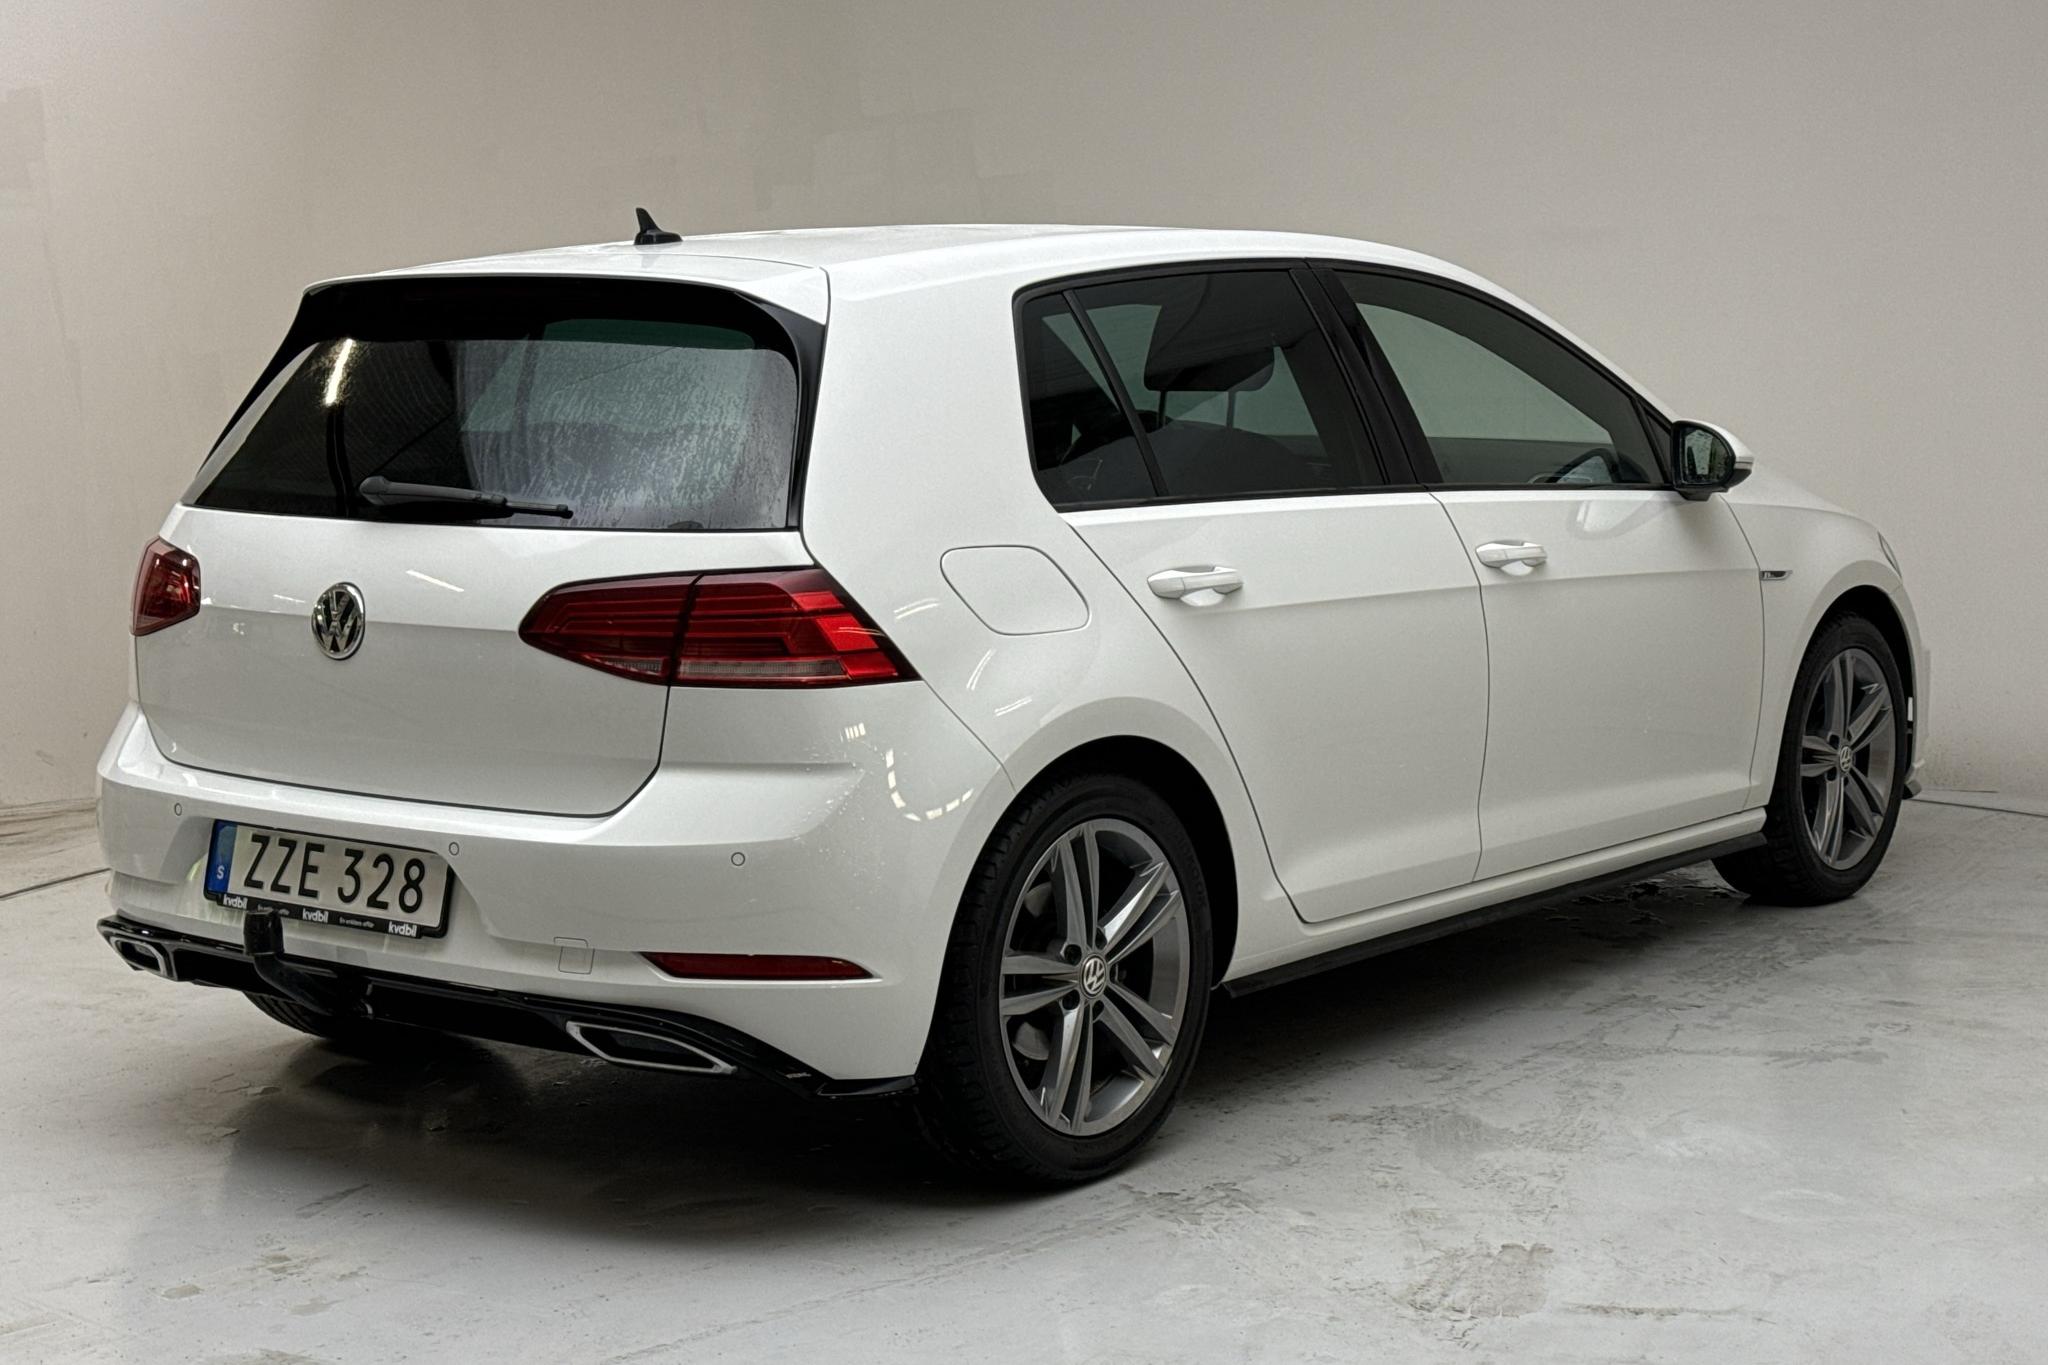 VW Golf VII 1.5 TSI 5dr (150hk) - 45 980 km - Manual - white - 2020